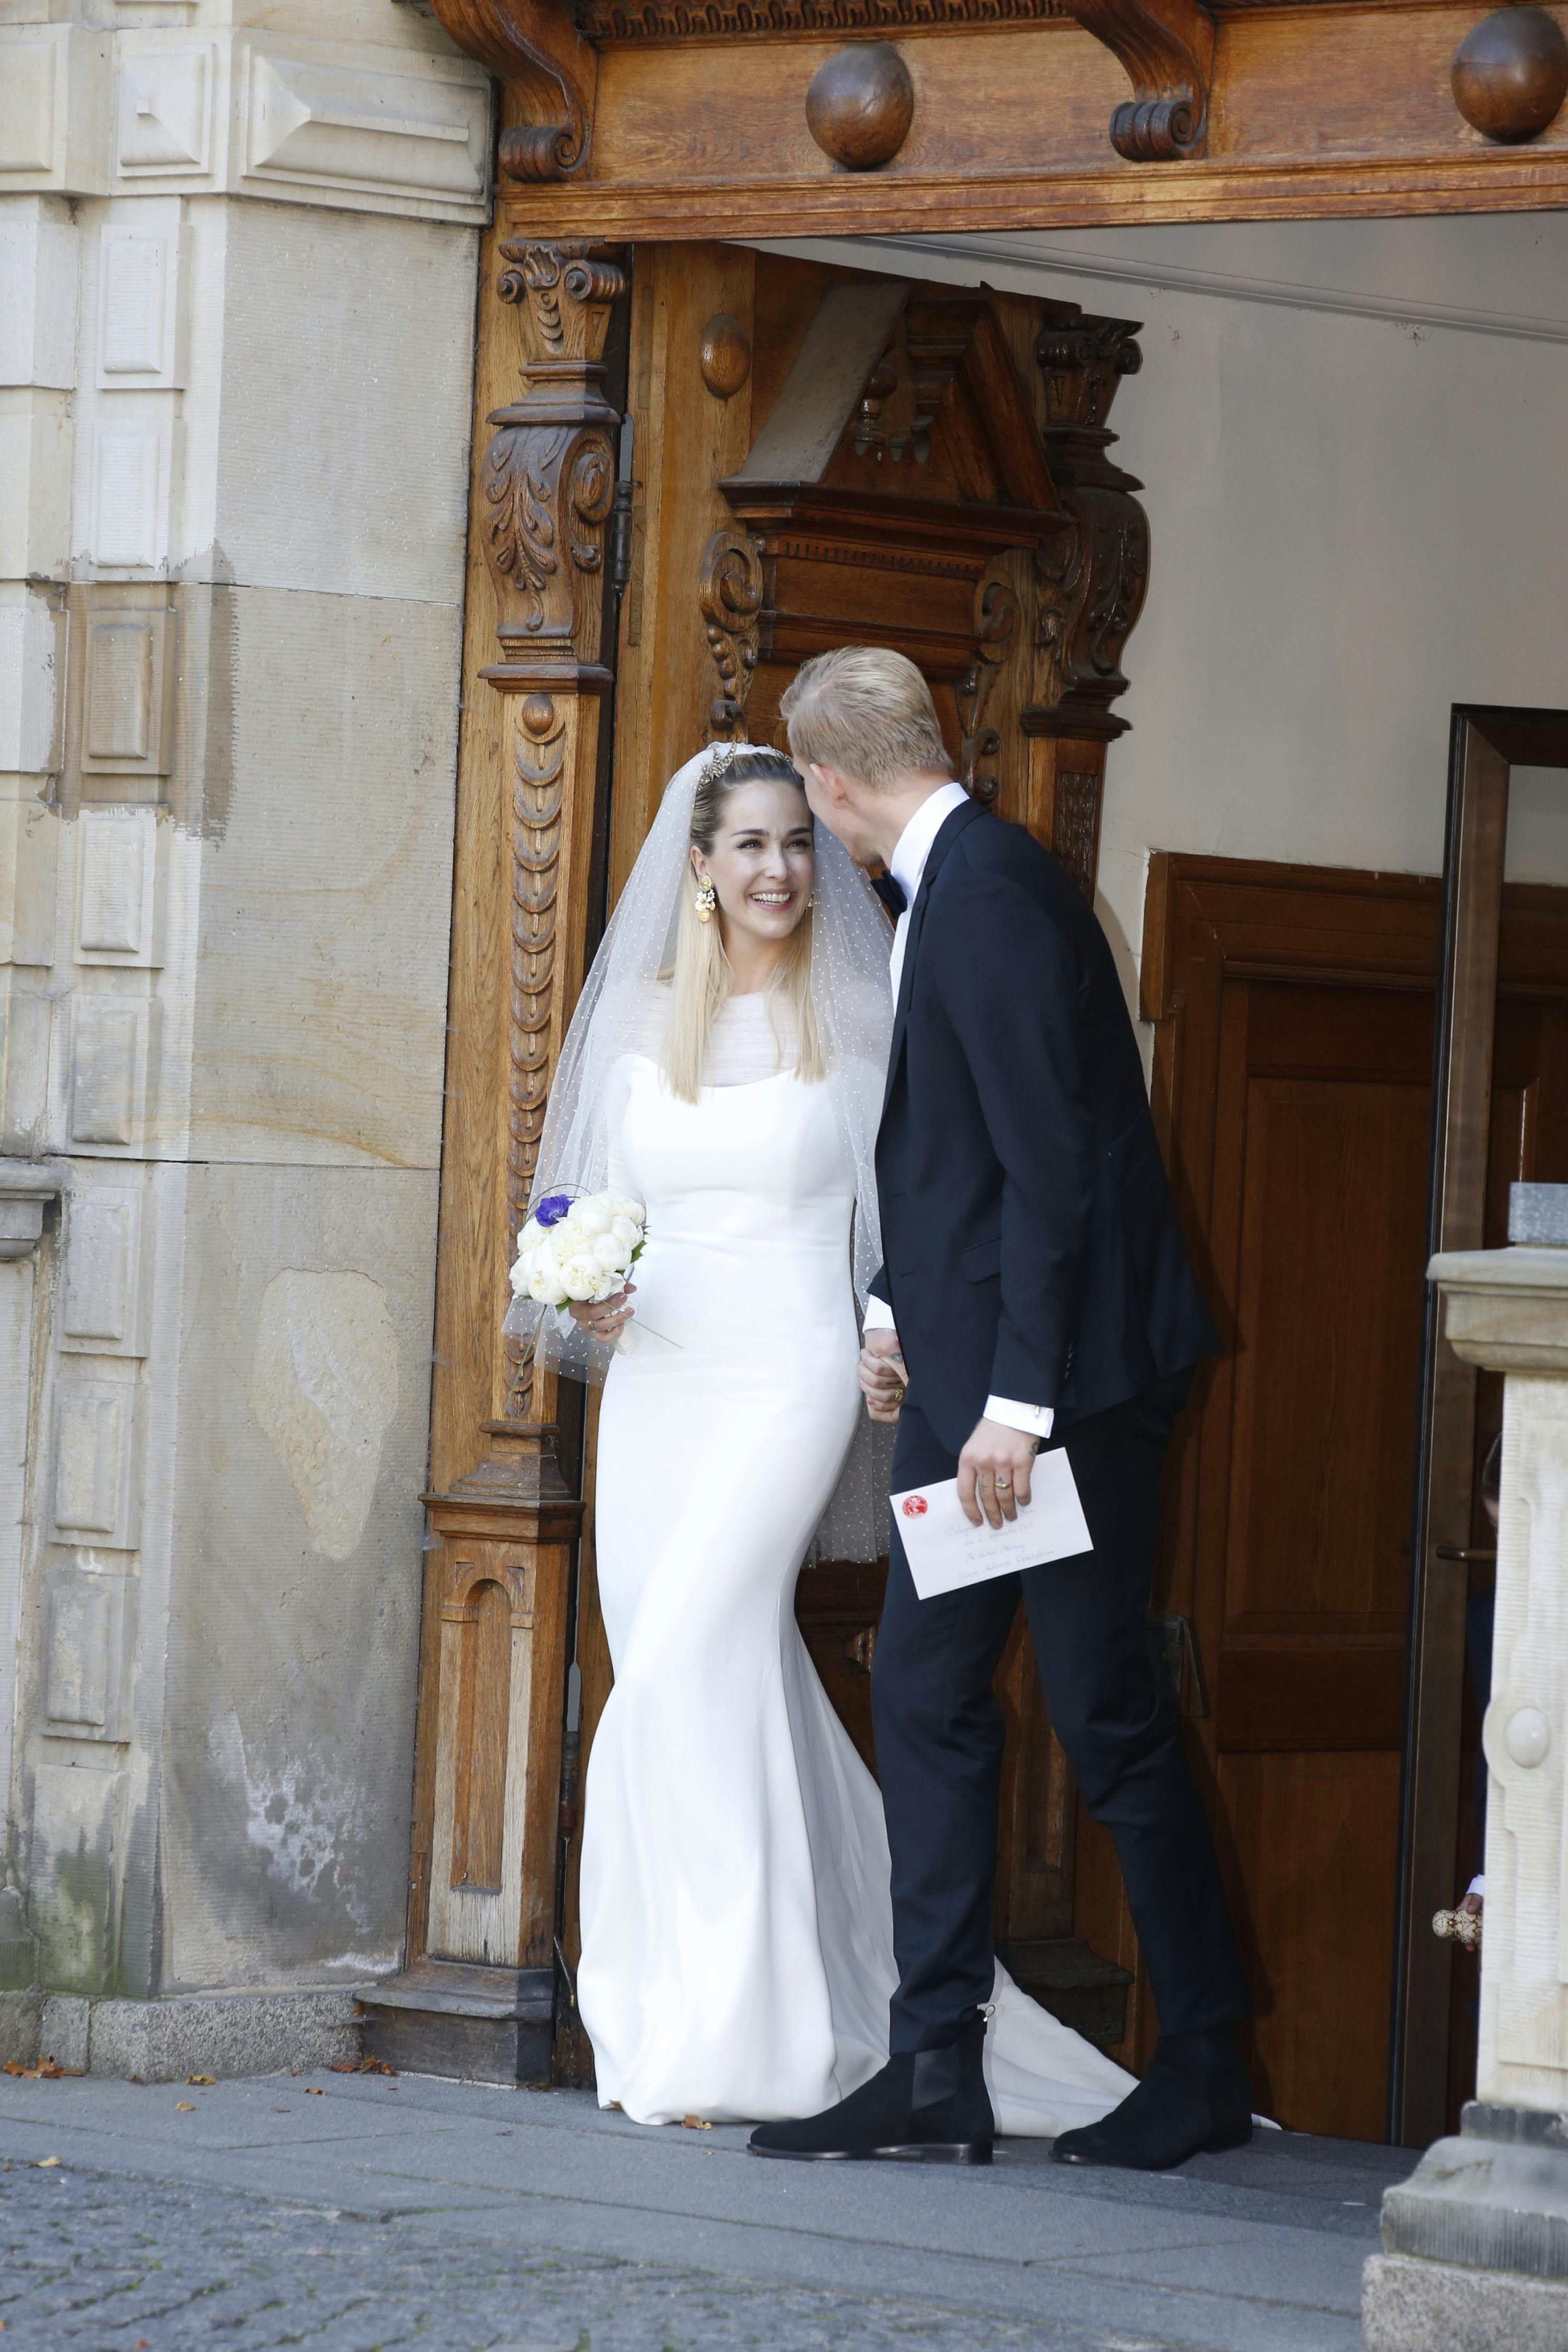 Kærligheden var stor, da tv-vært Ibi Støving giftede sig med fodboldspilleren Simon Makienok i Holmens Kirke i København.